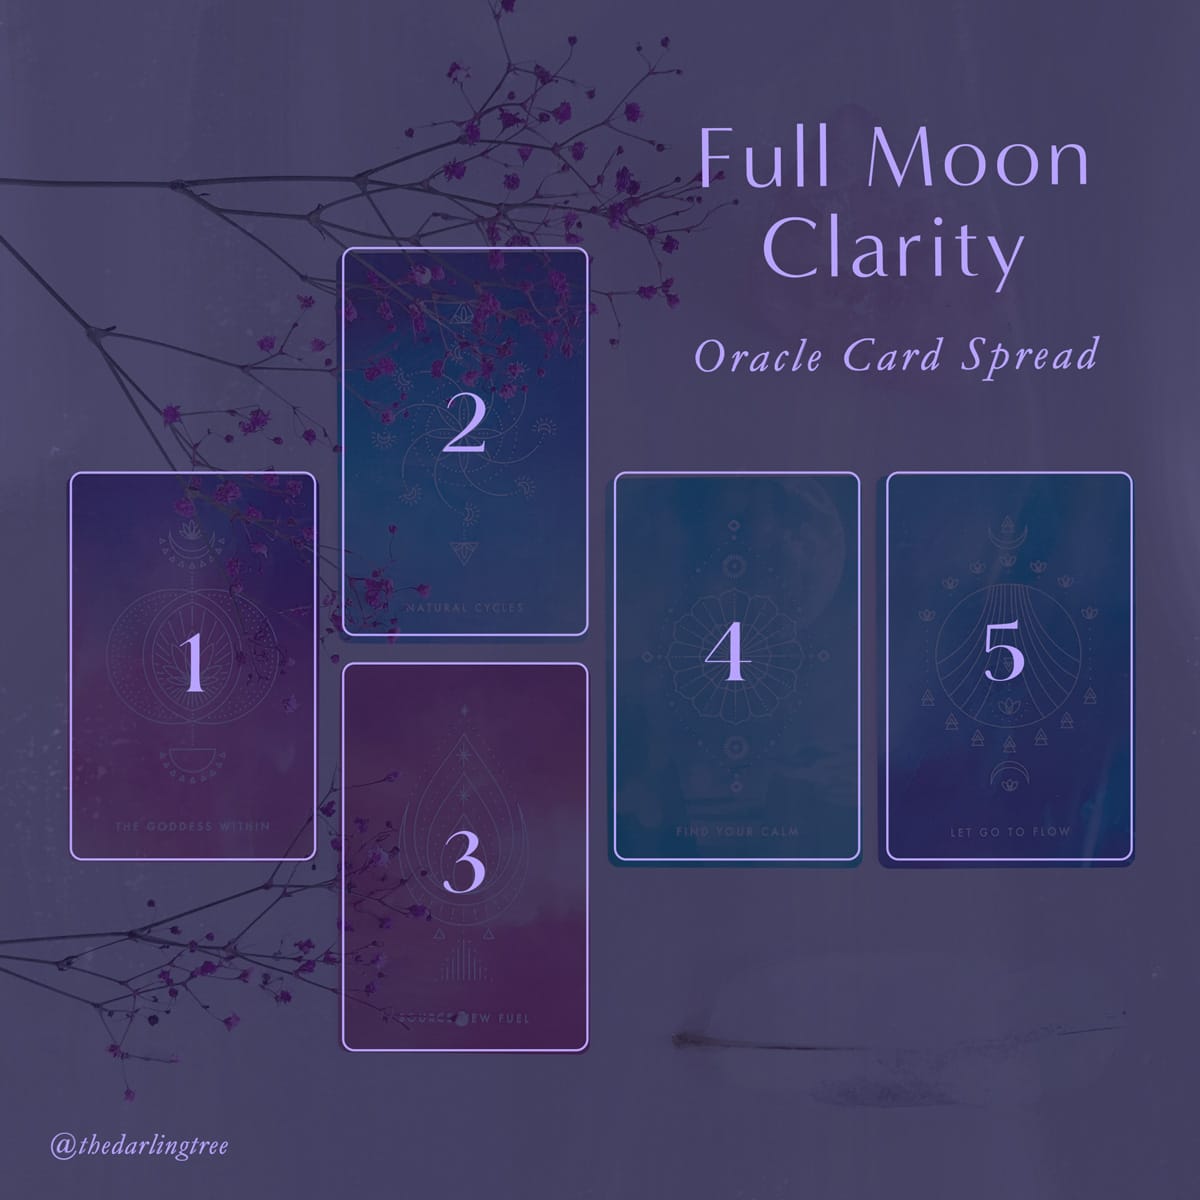 Full Moon Clarity Oracle Card Spread